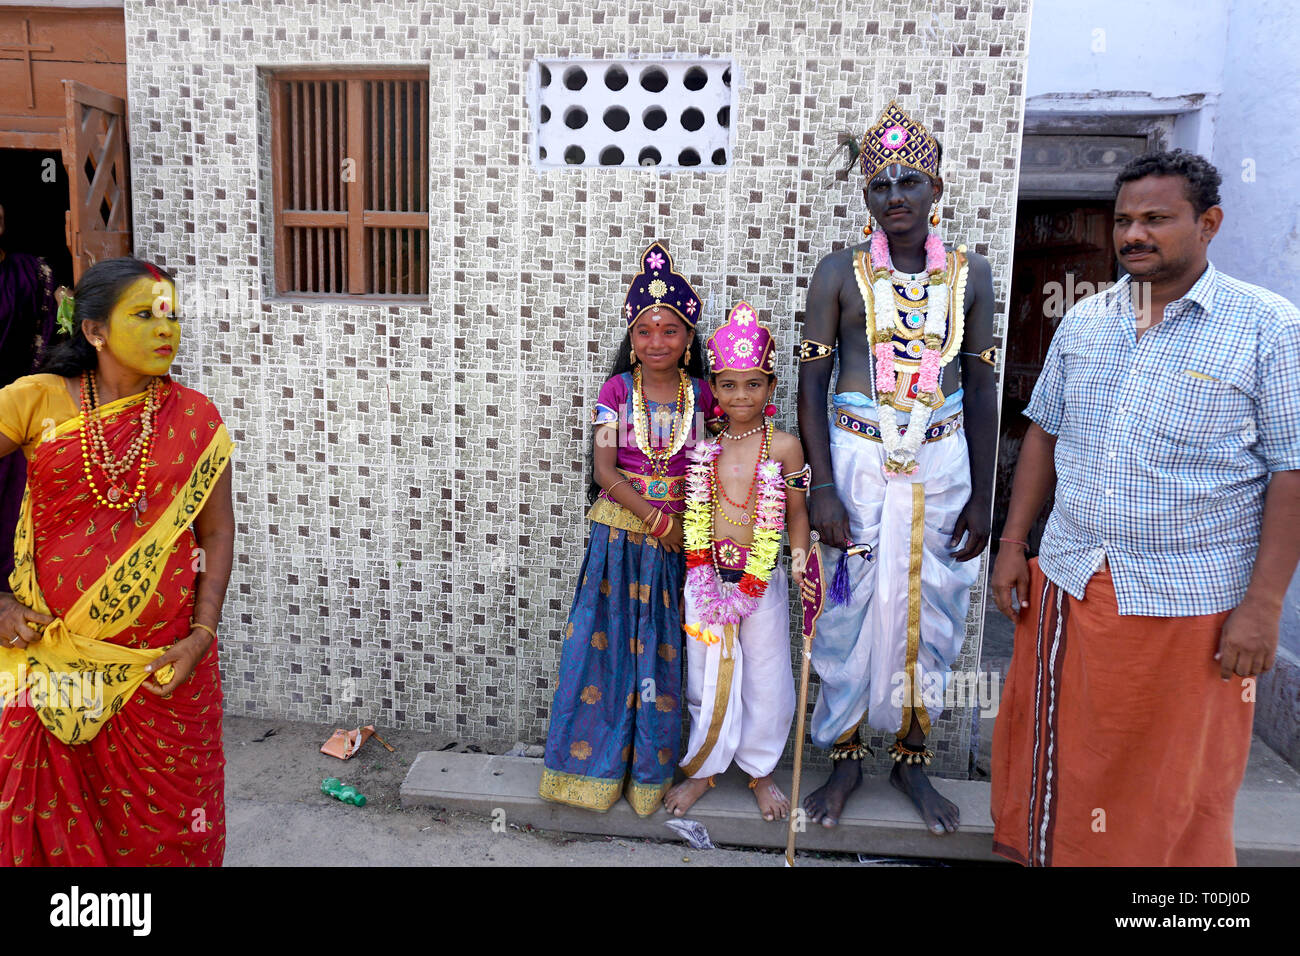 Les gens s'habillent comme des dieux hindous près de Mutharamman temple, Tamil Nadu, Inde, Asie Banque D'Images